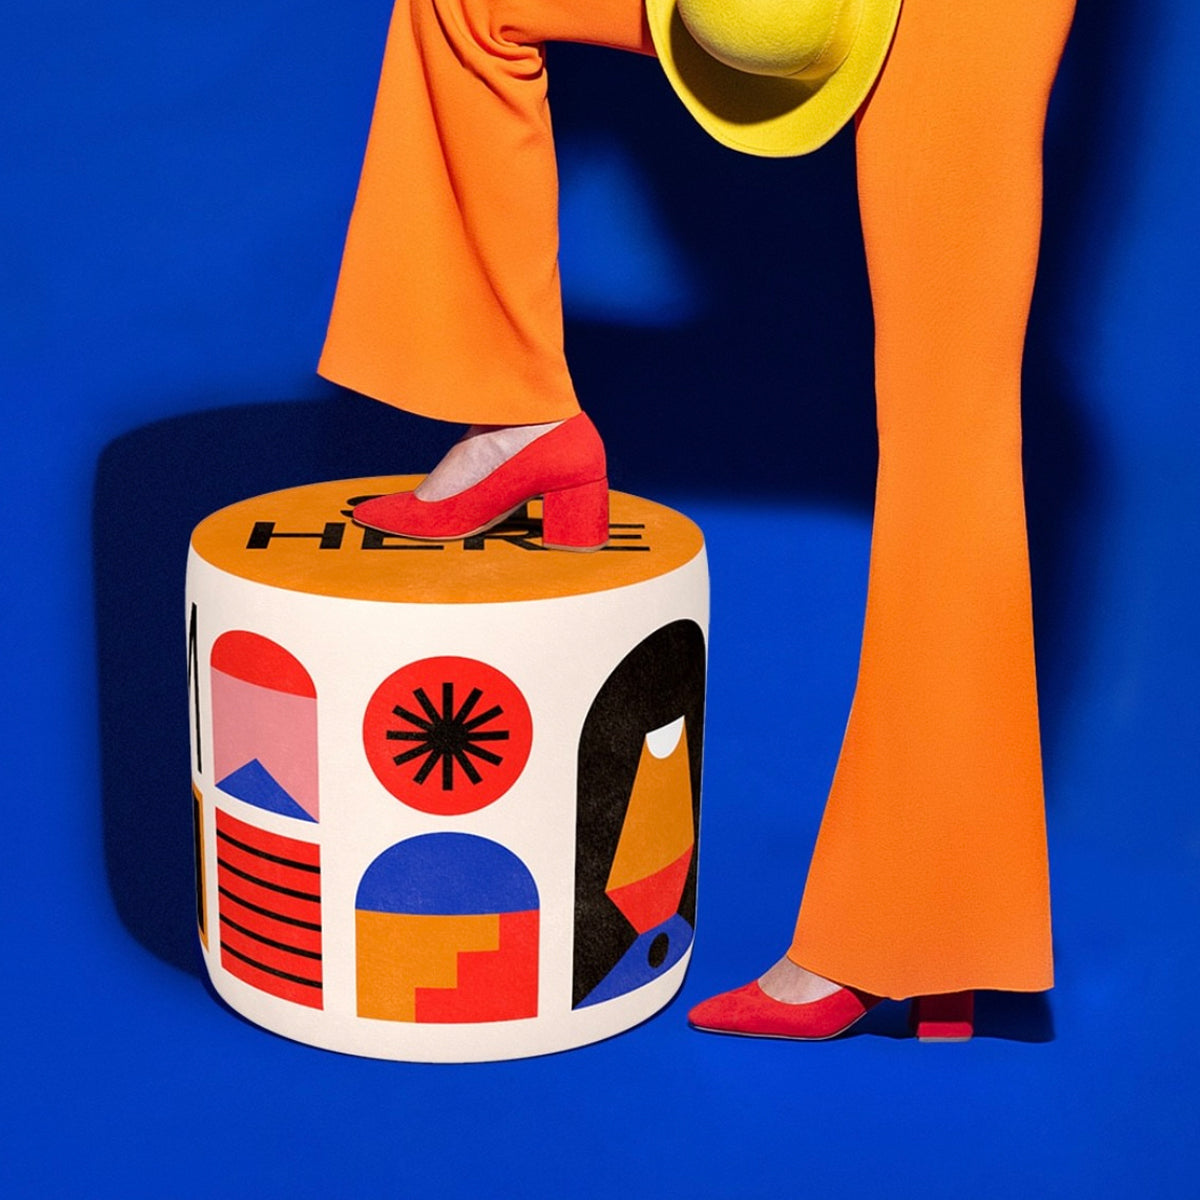 Oggian Sit Here Orange Pouf S by Marco Oggian - Qeeboo